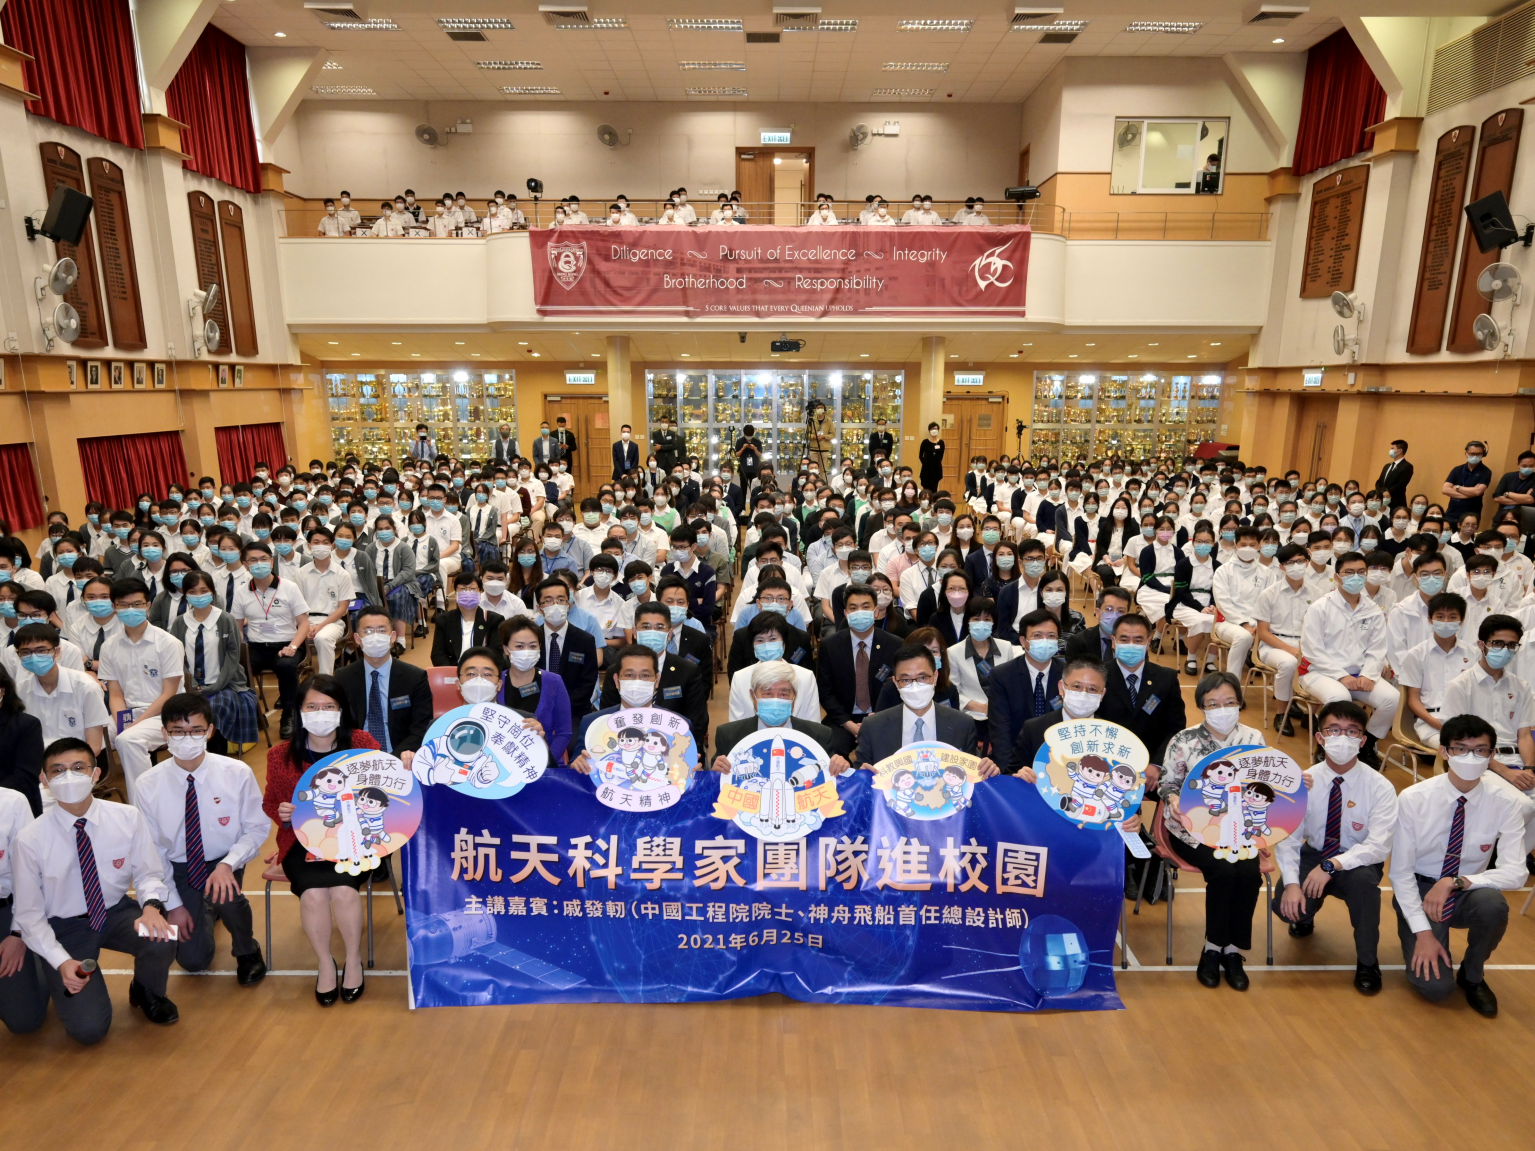 香港举办“航天科学家团队进校园”活动